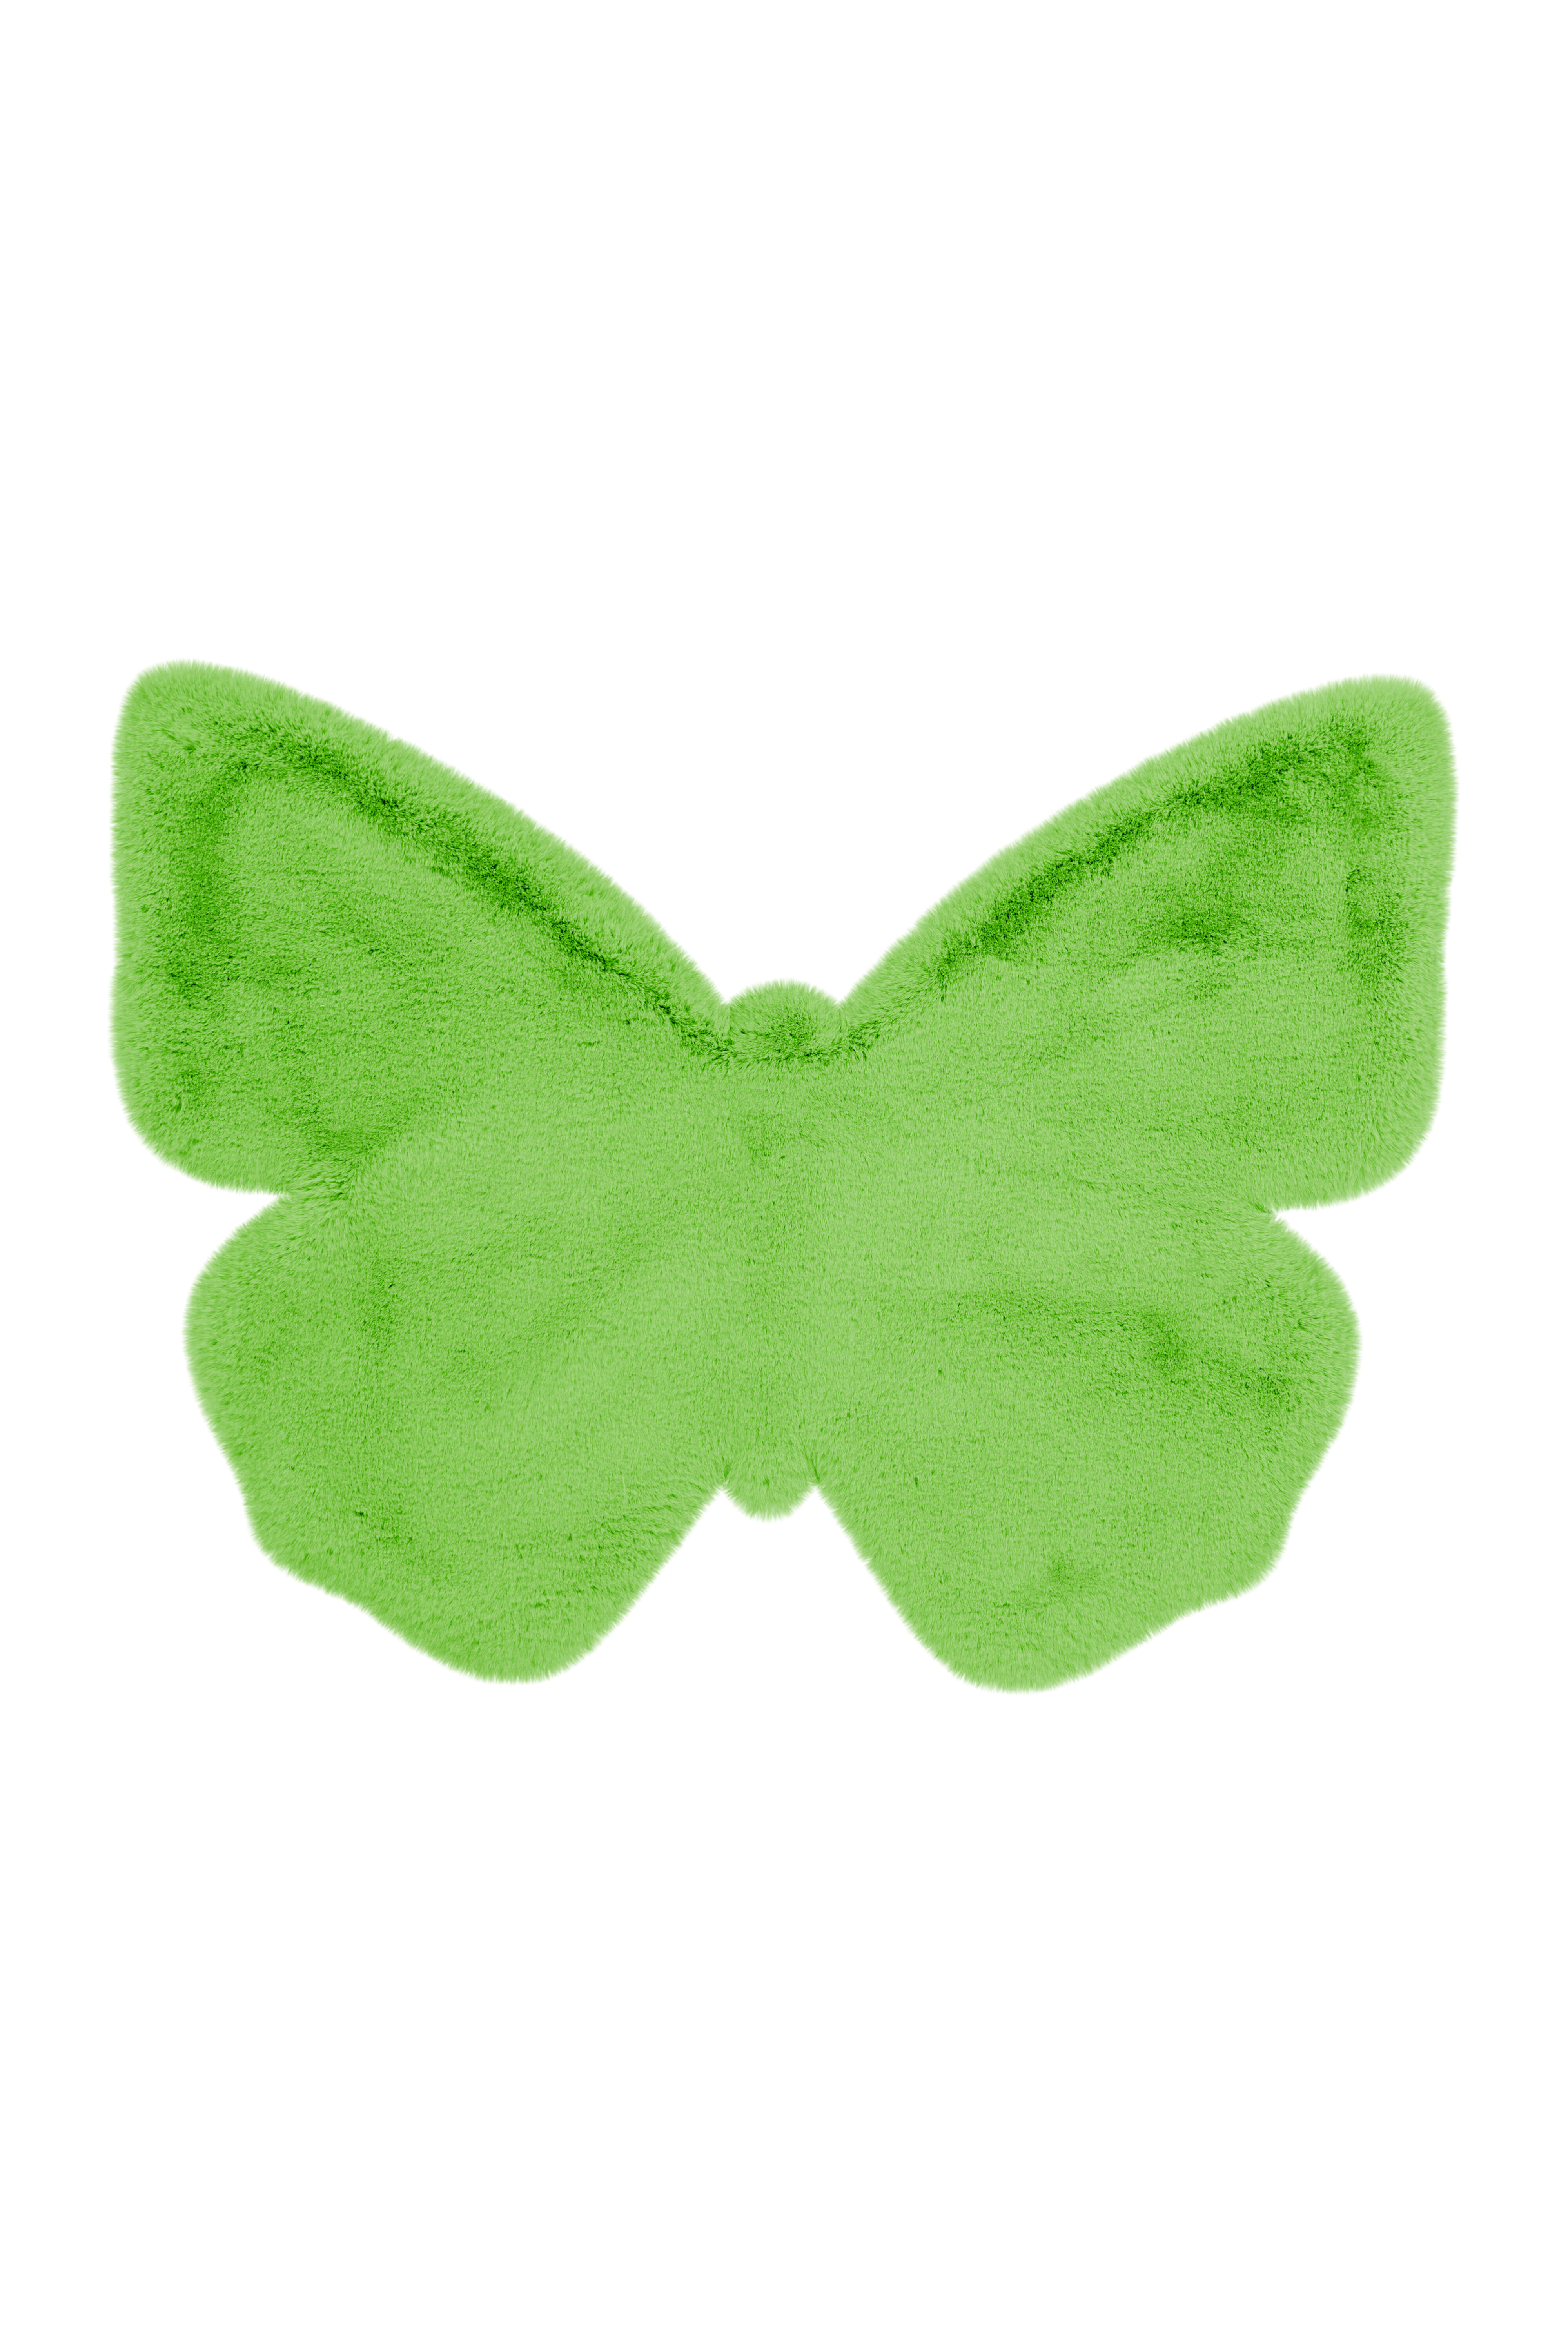 Kayoom Vloerkleed 'Vlinder' kleur Groen, 70 x 90cm